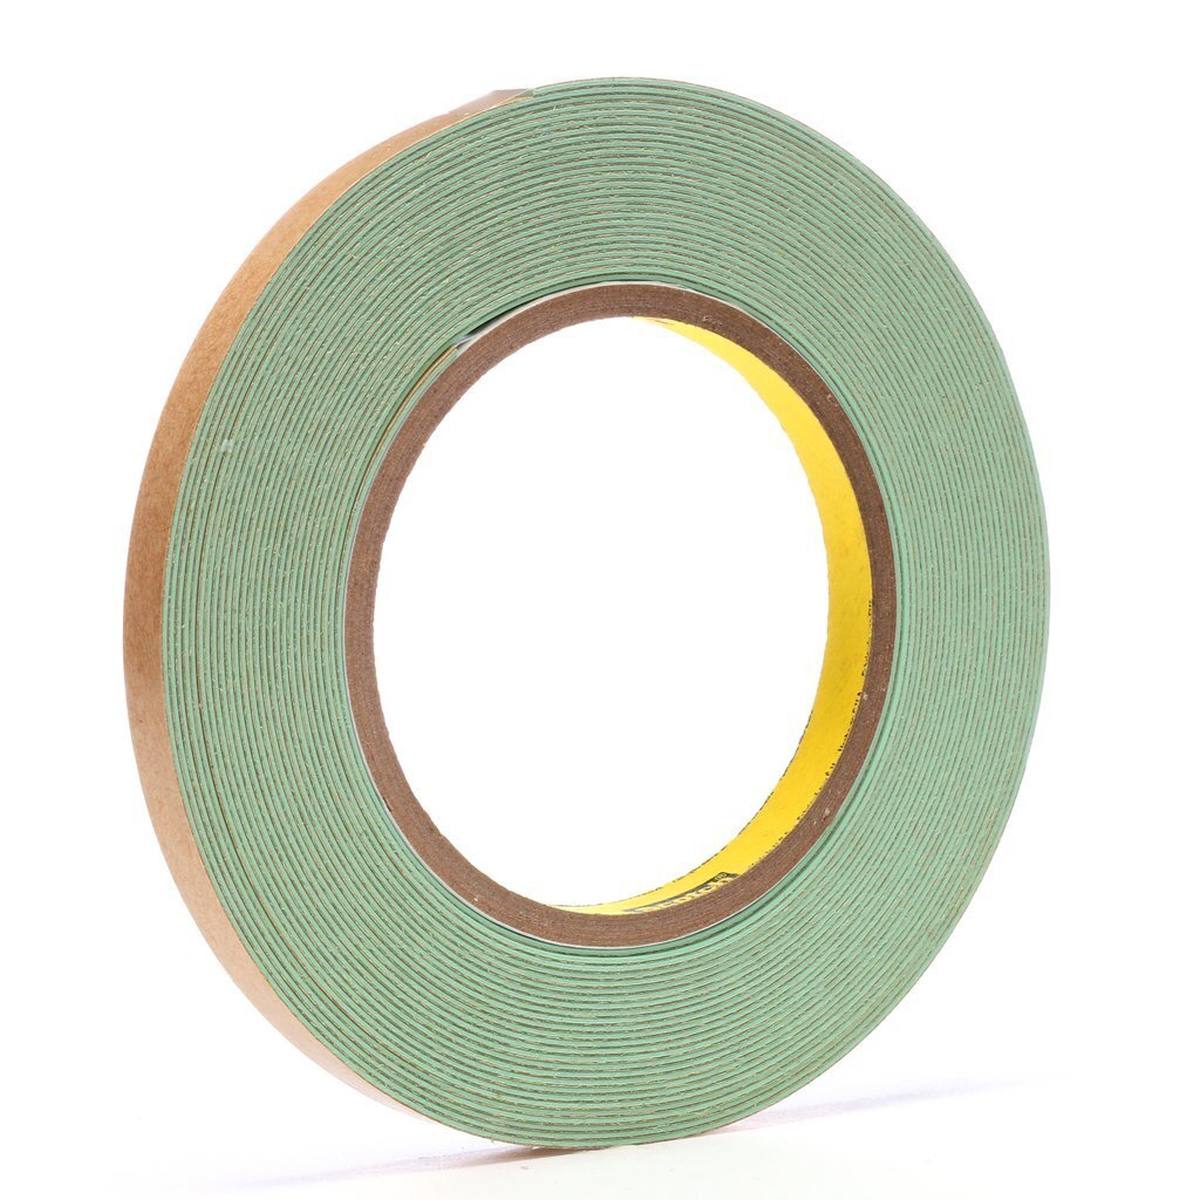 3M Ruban d'étanchéité pour joints, vert clair, 9,1 m x 9,5 mm x 0,9 mm, peut être peint